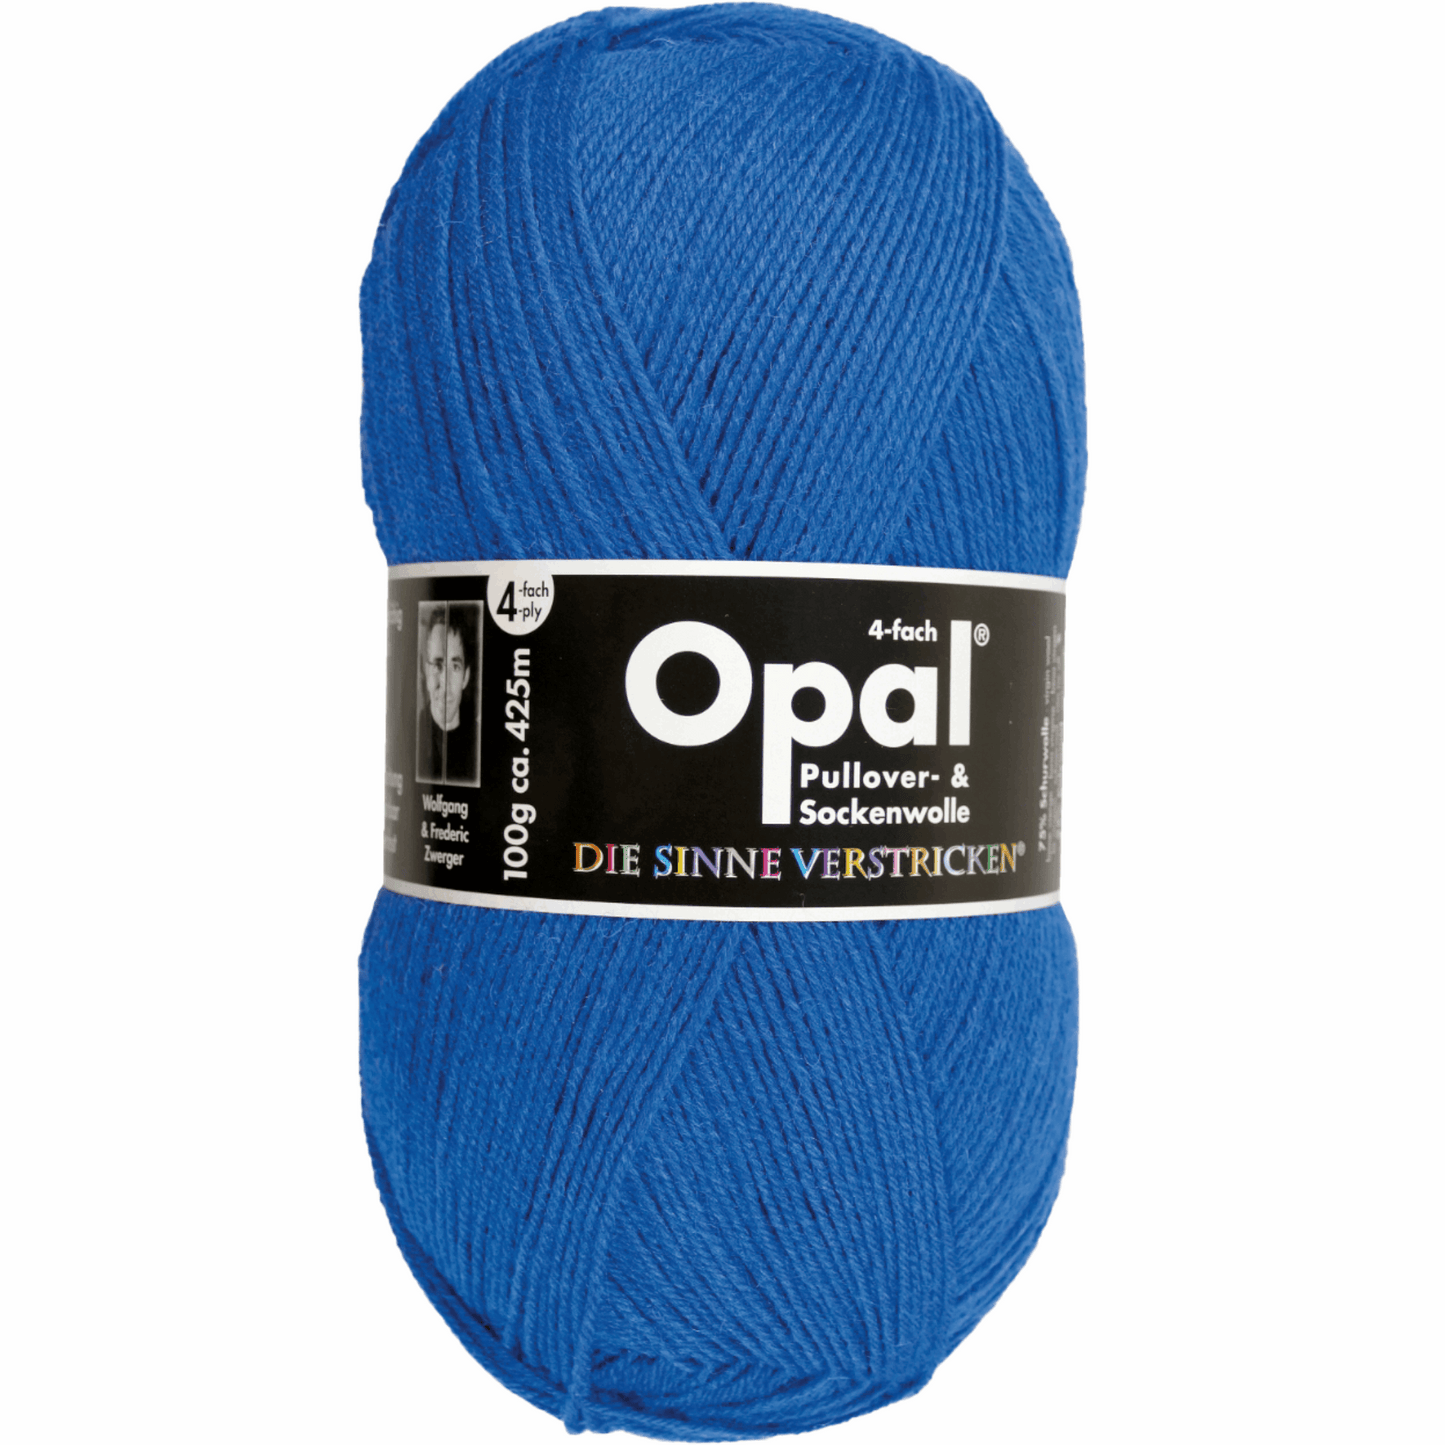 Opal uni 4fädig. 100g 2011/12, 97760, Farbe blau 5188